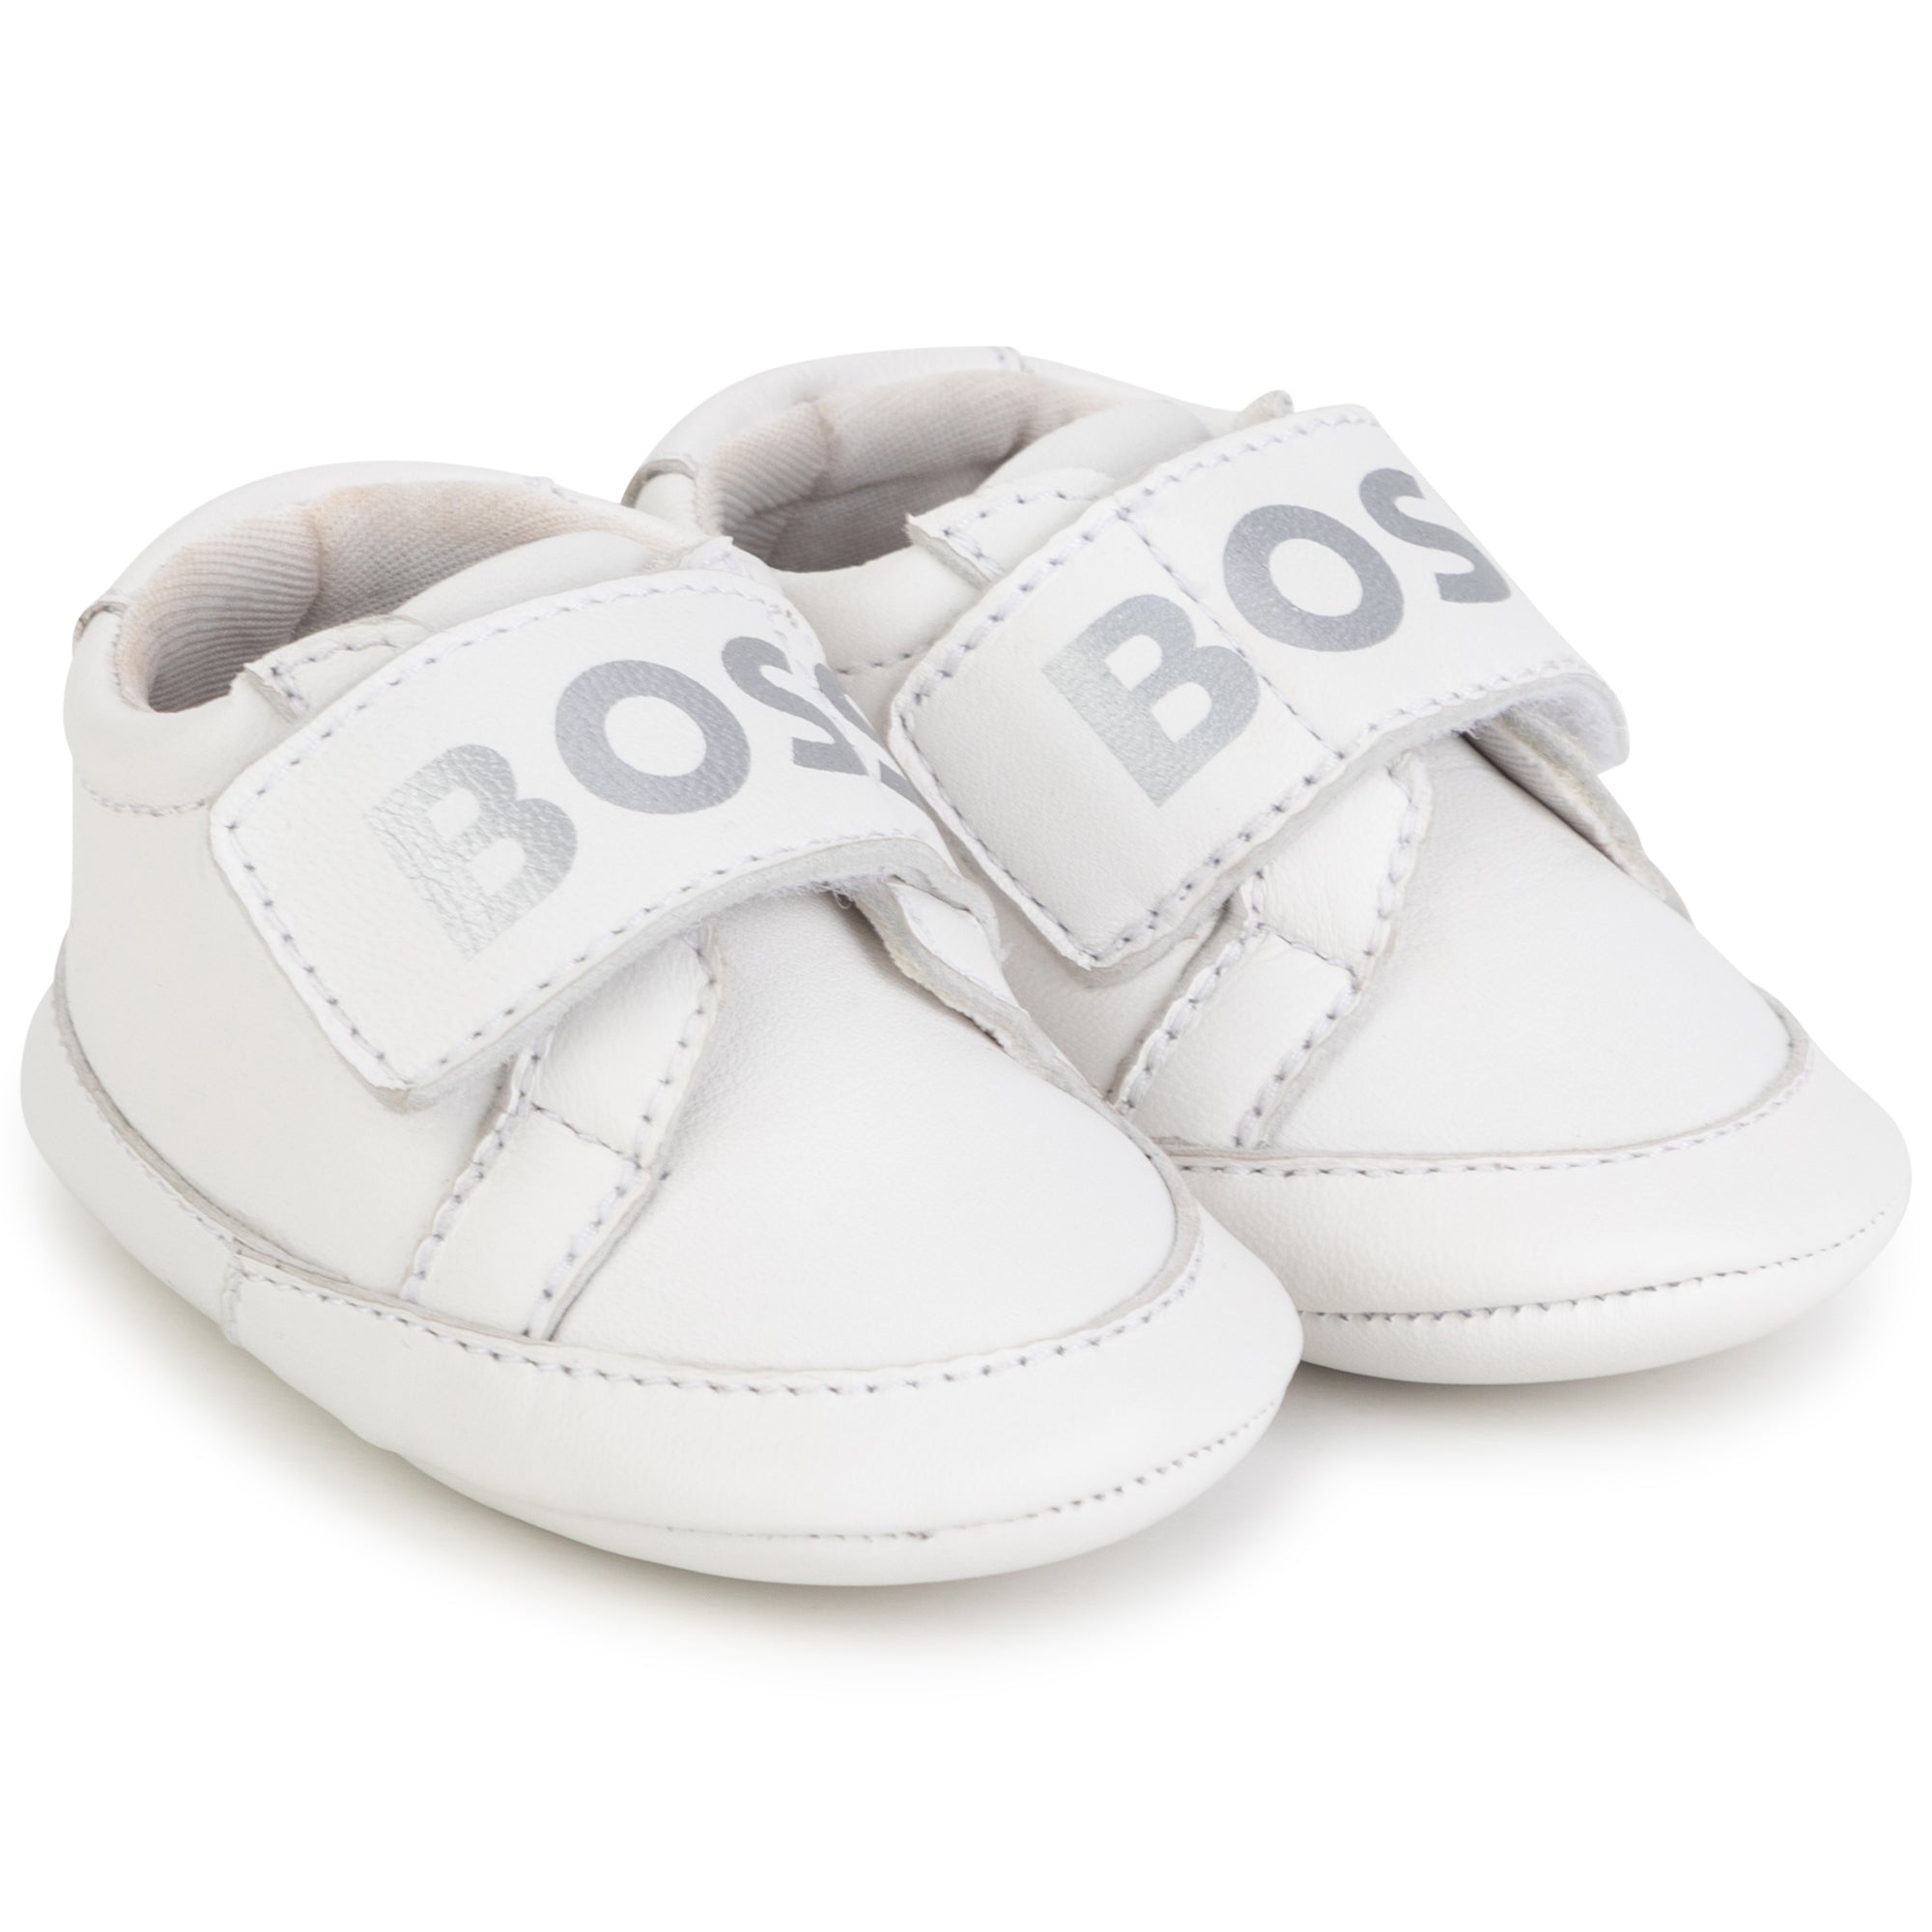 Hugo Boss Baby Unisex White Shoes